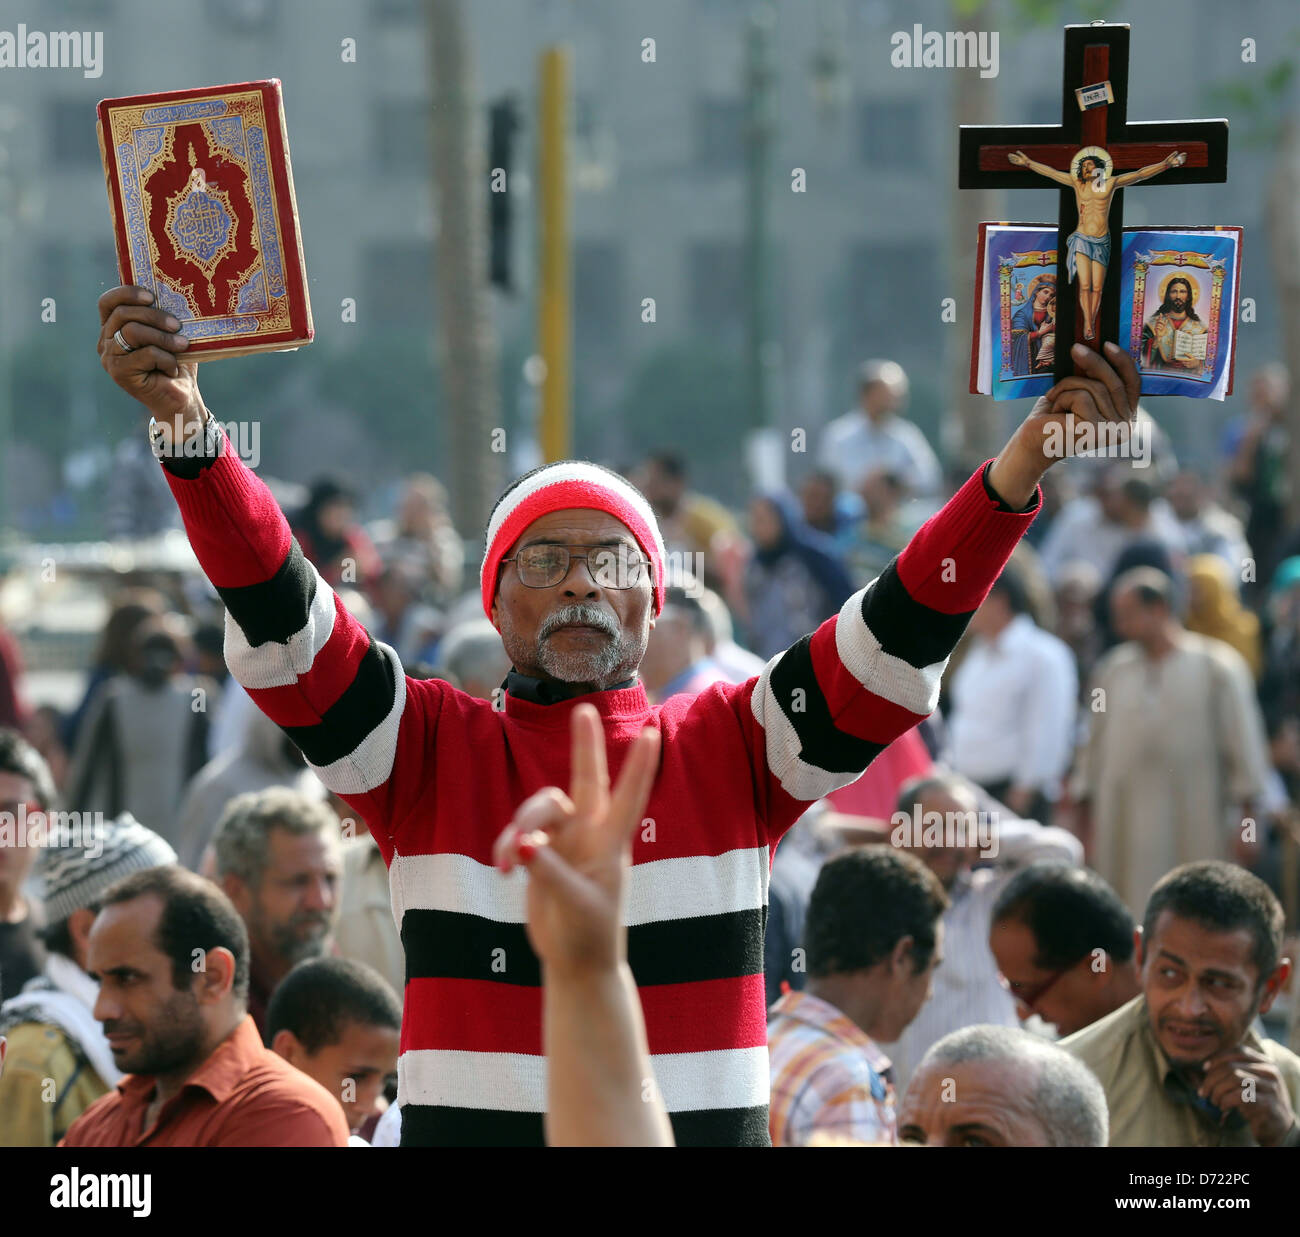 Un égyptien détient le saint Coran et la bible chrétienne avec croix en bois au cours d'un grand rassemblement sur la place Tahrir, Le Caire, Egypte Banque D'Images